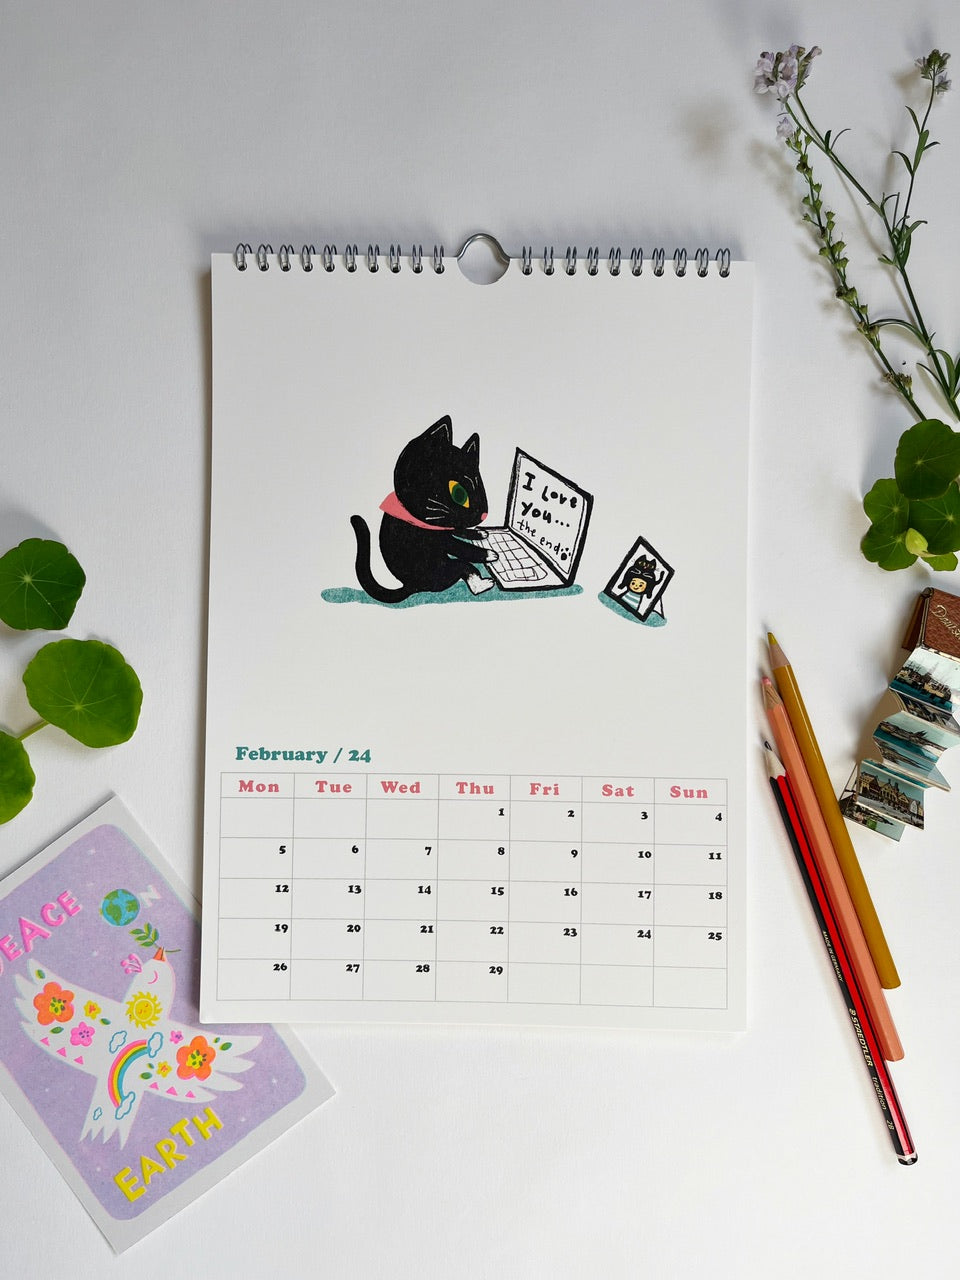 Girls and Cats 2024 calendar- A4 Wall Calendar